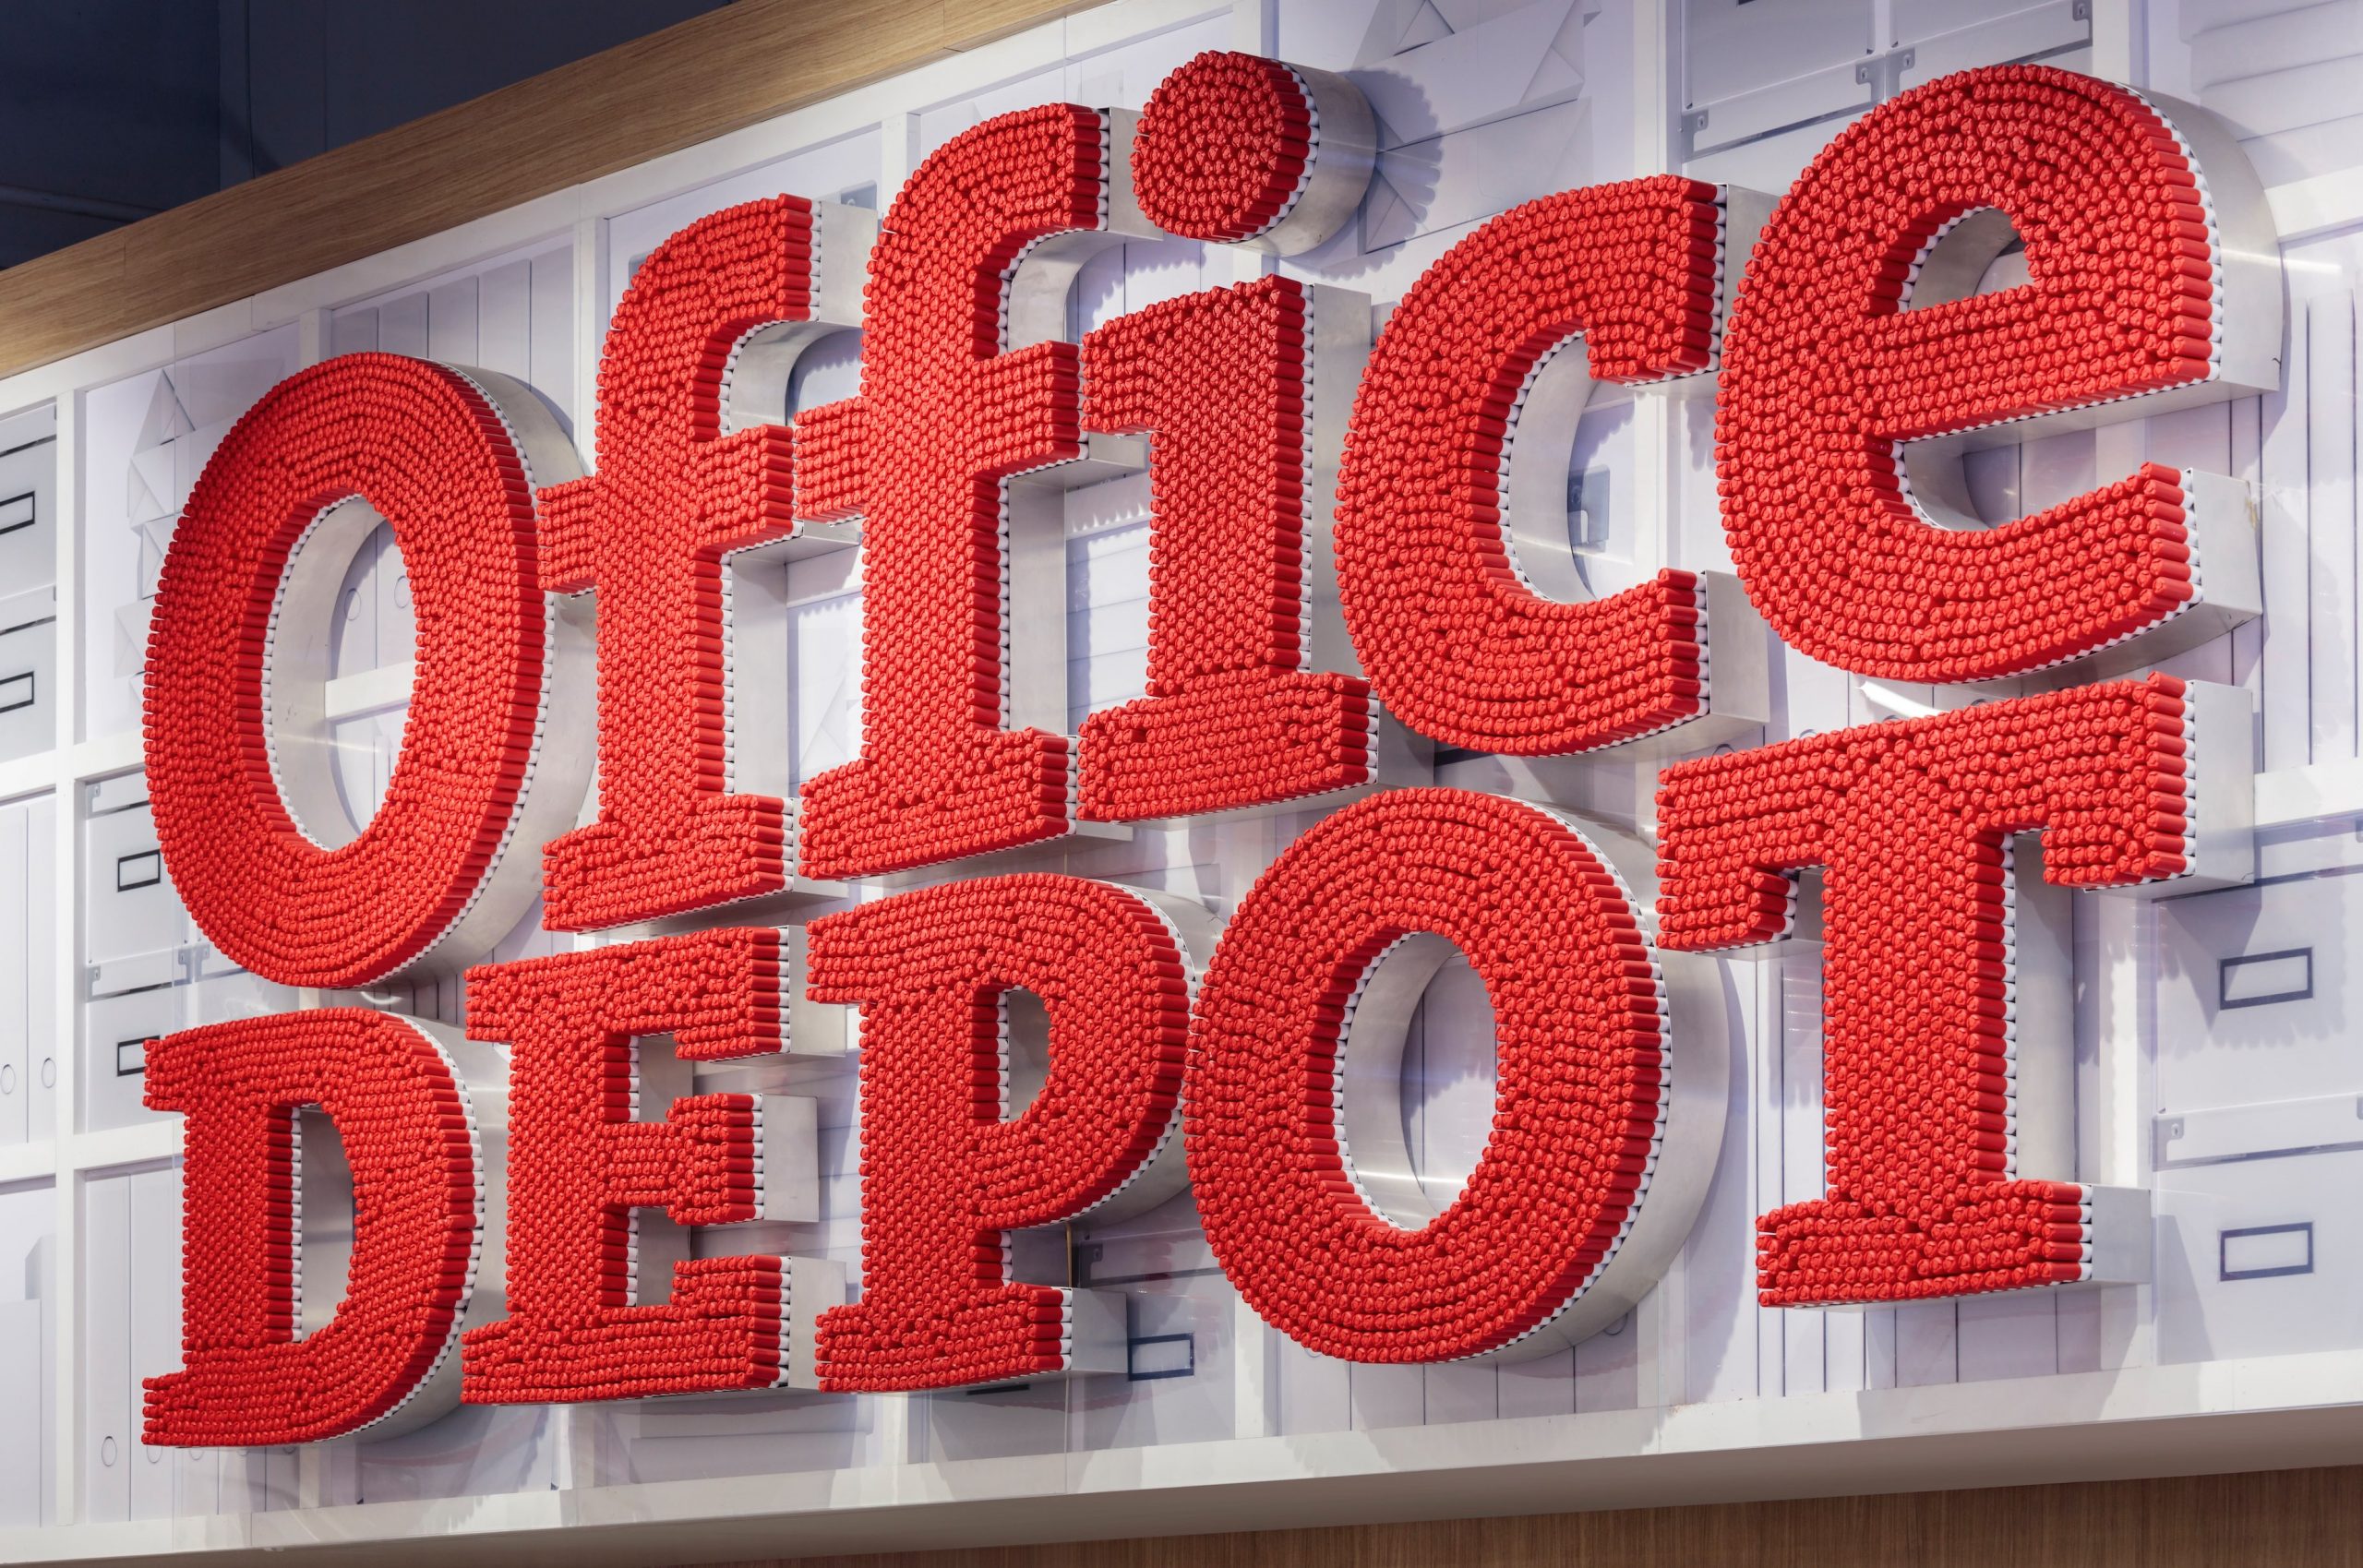 Office Depot - Store Design, Brand Strategy | Watt International